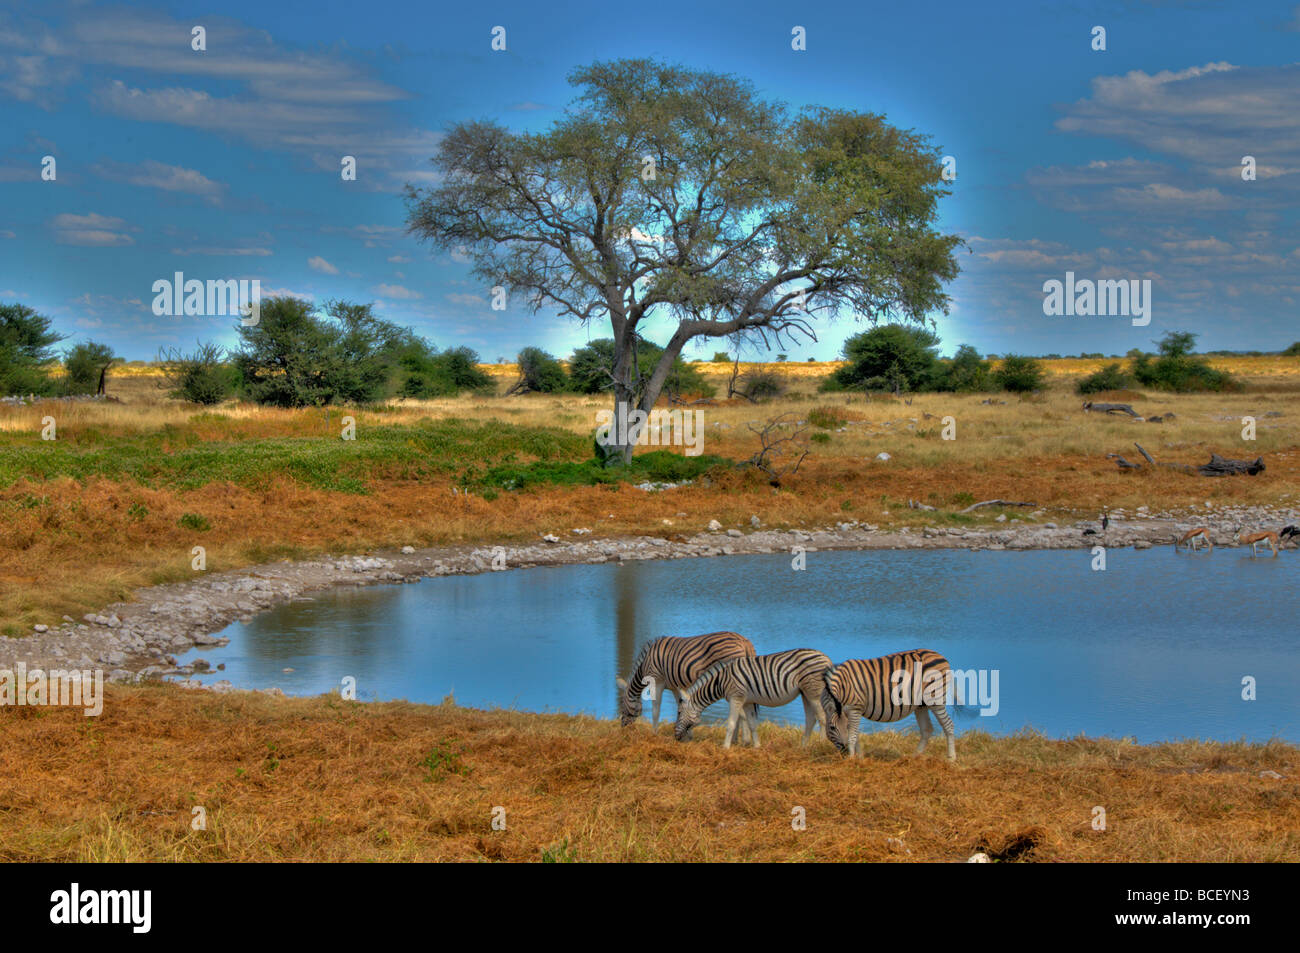 Burchell zèbres boire à un étang dans le parc national d'Etosha en Namibie Banque D'Images